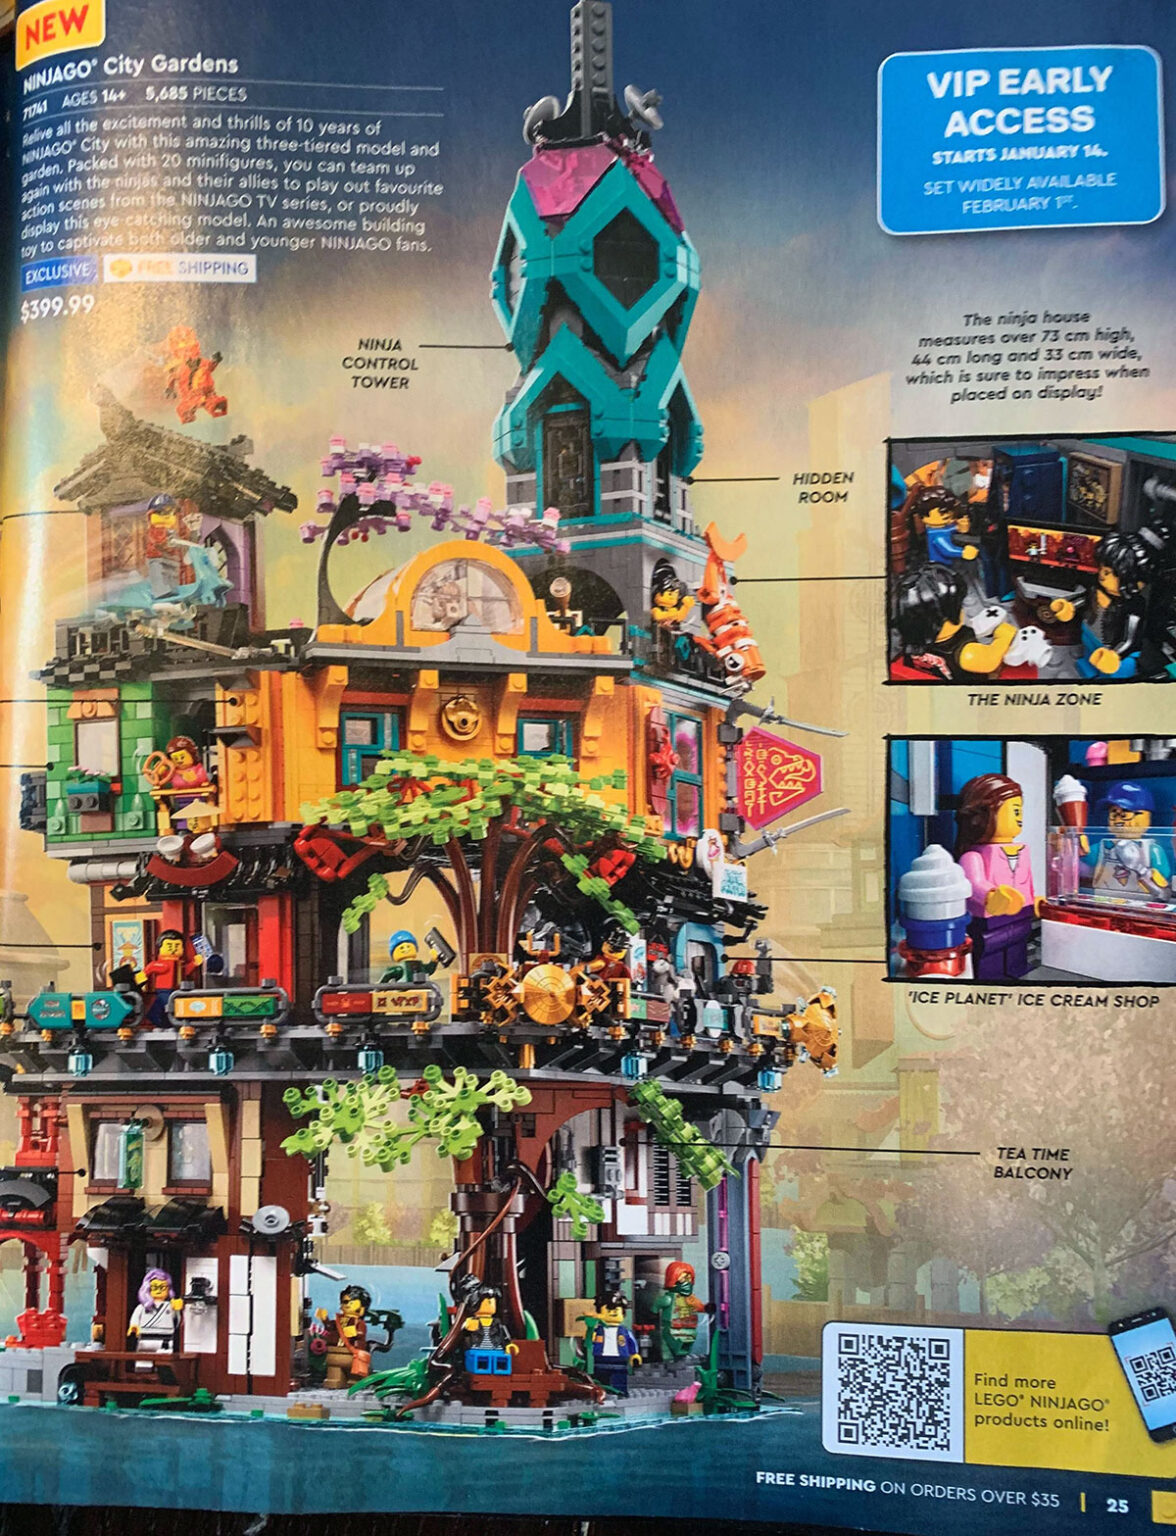 LEGO Ninjago City Gardens 71741